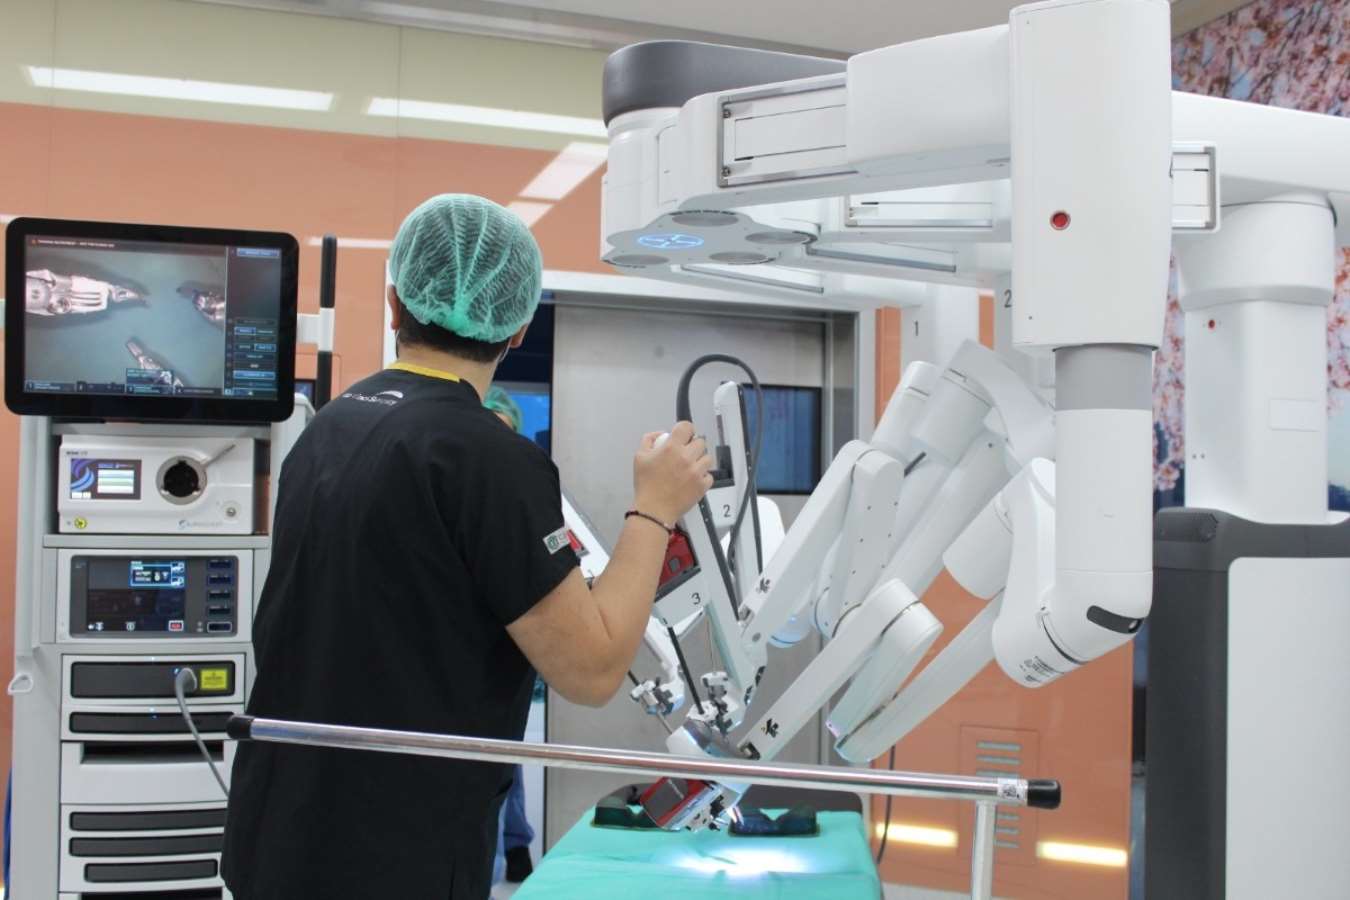 Doktorların imkansız dediği ameliyatı robot cerrah başardı